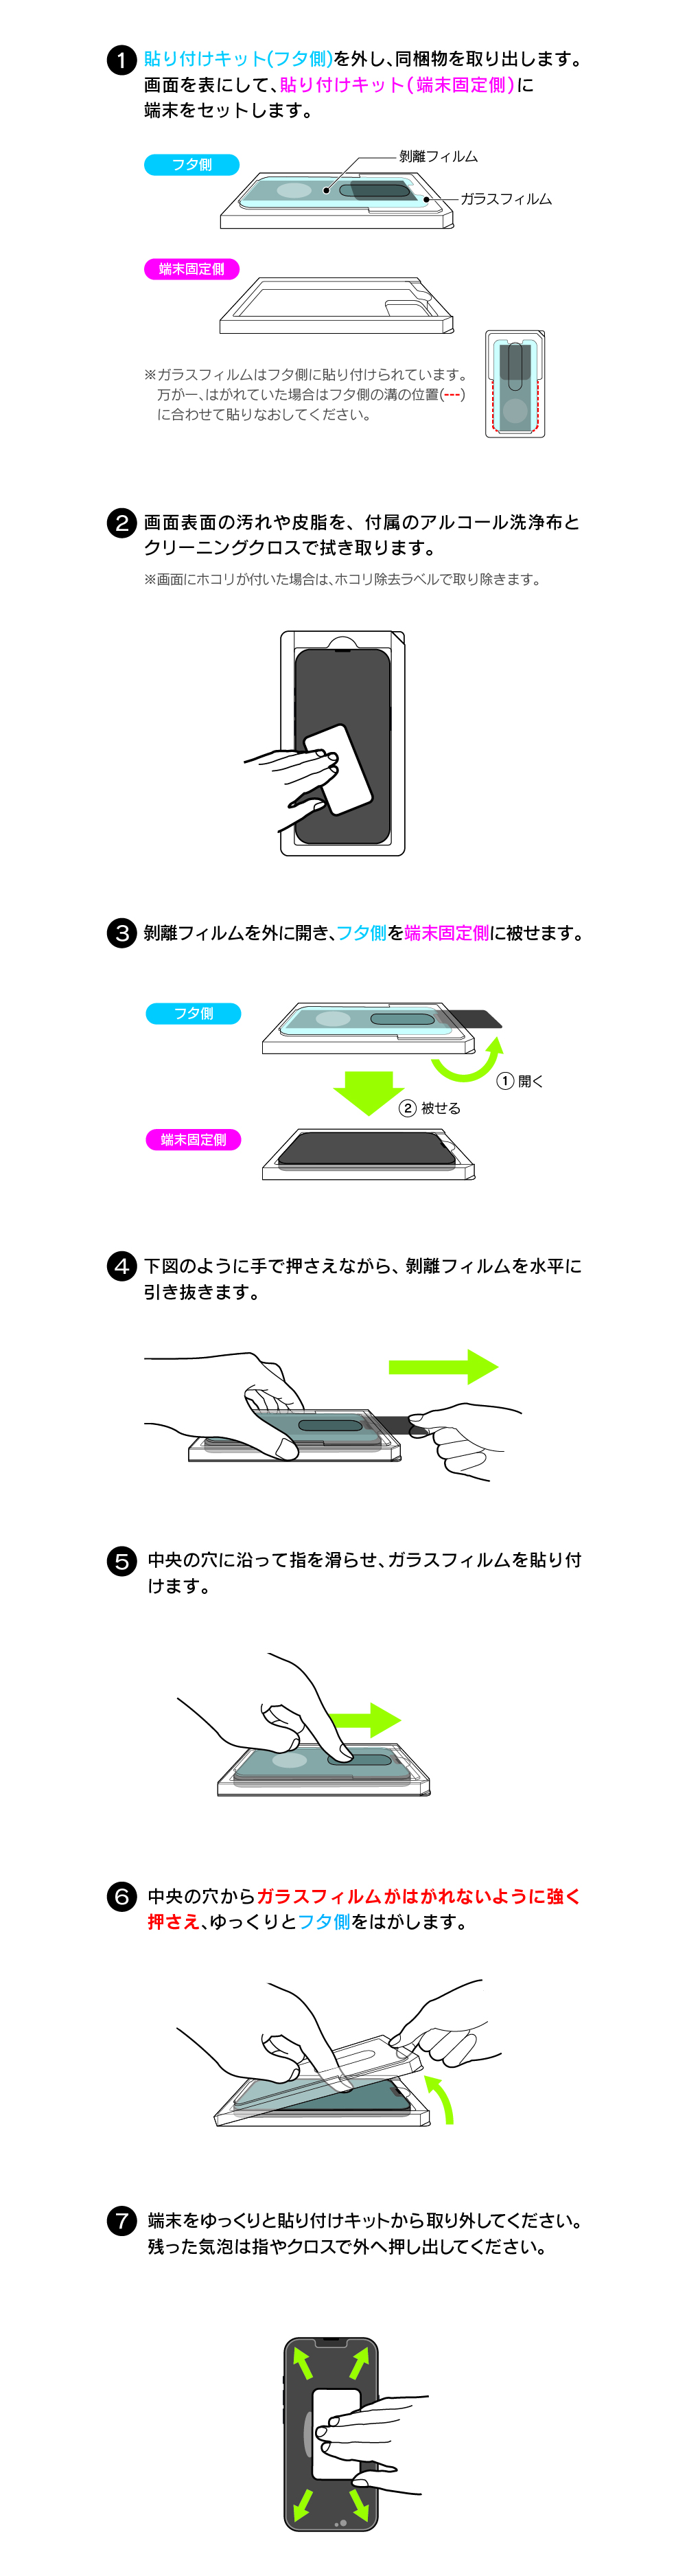 Iphone 14 ガラスフィルム貼り付けキット説明ページ スマホ タブレット アクセサリー総合メーカーmsソリューションズ